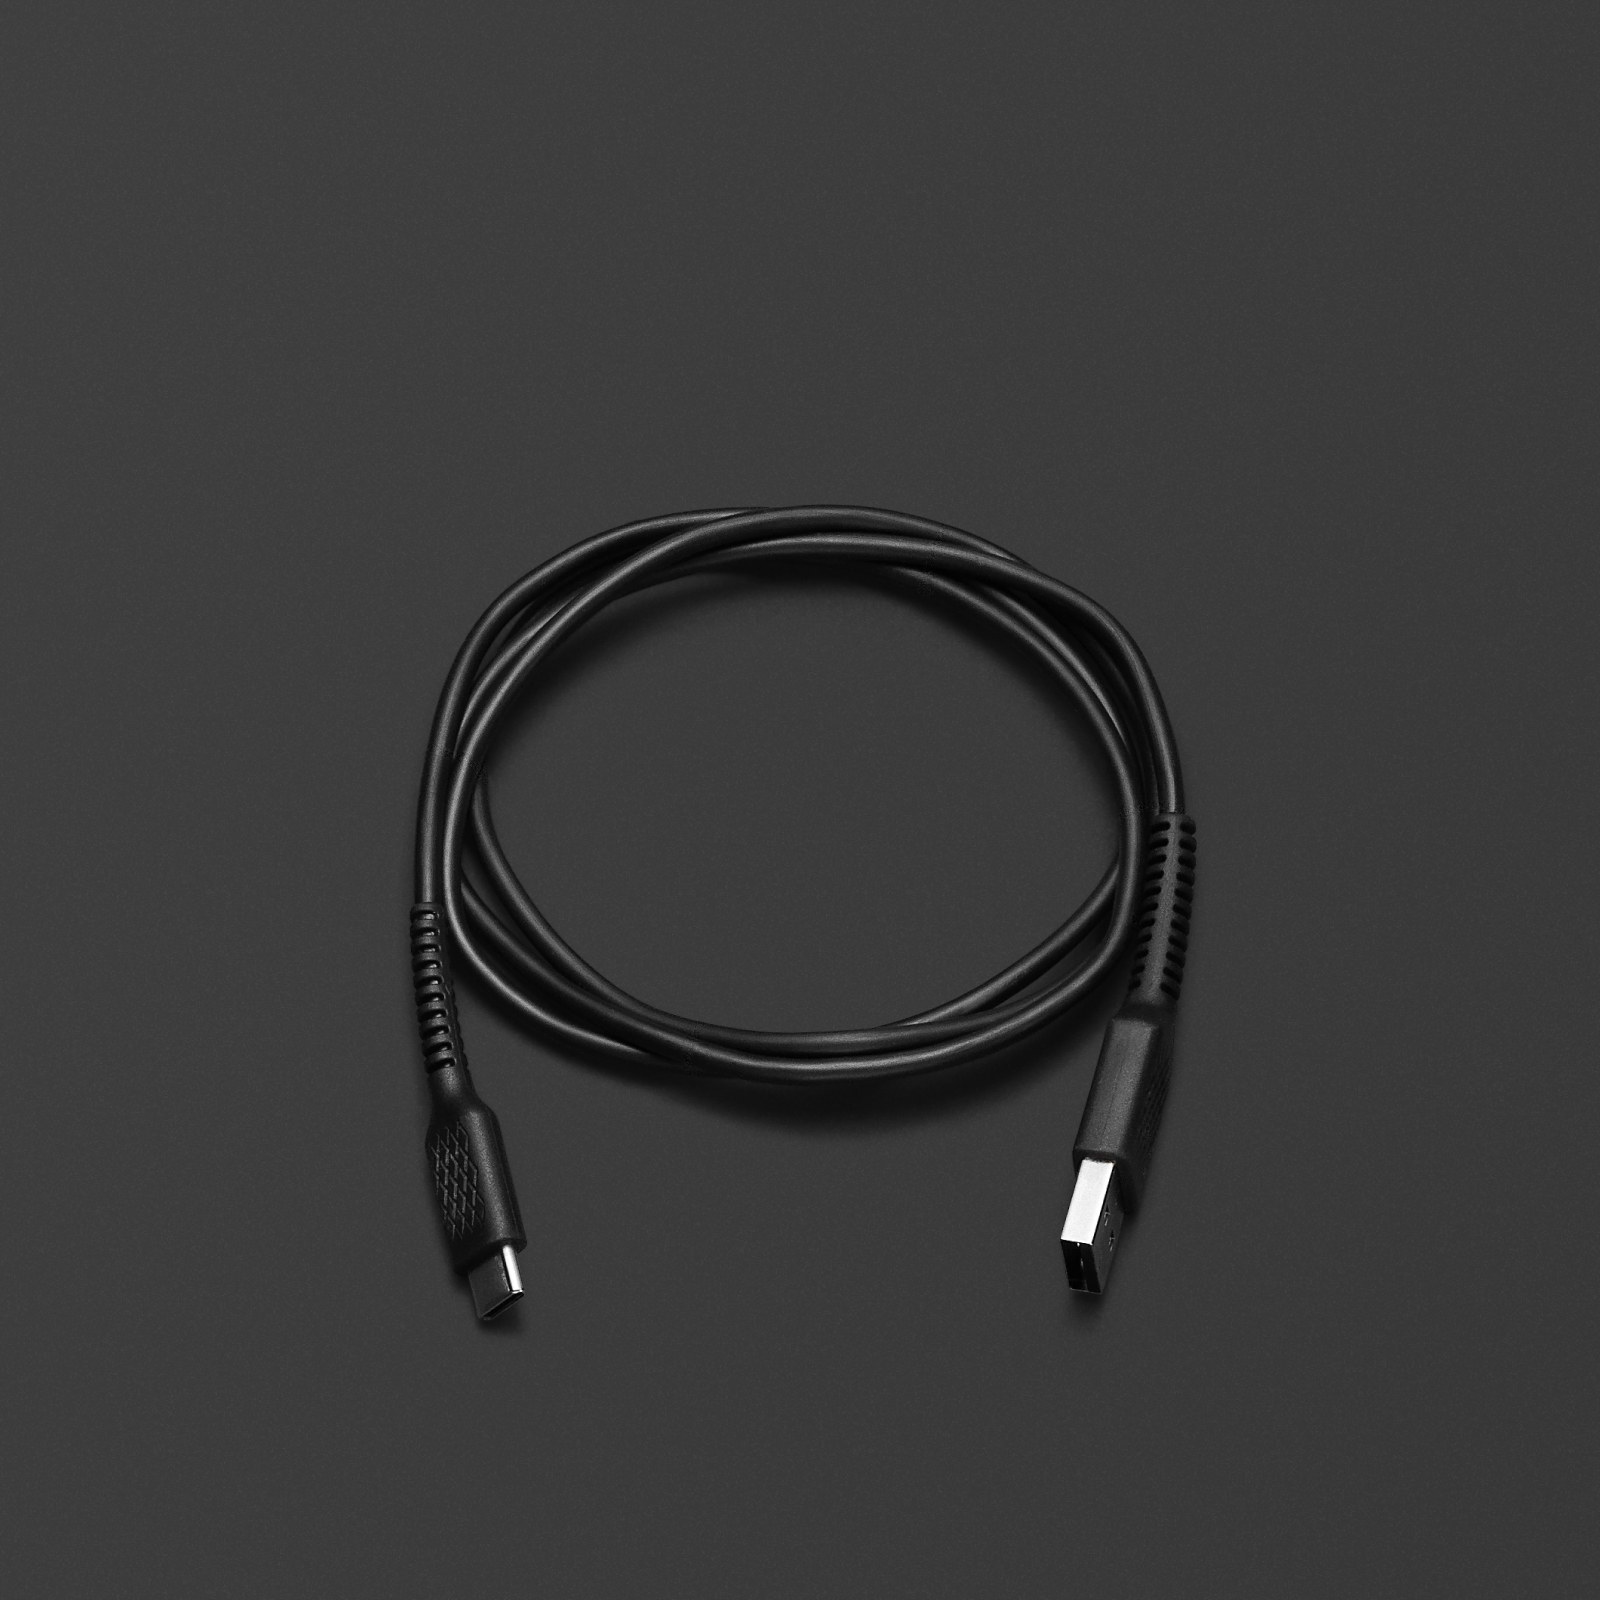 검은색 표면 위에 놓인 블랙 색상의 Marshall USB-C LONG CHARGING CABLE. 